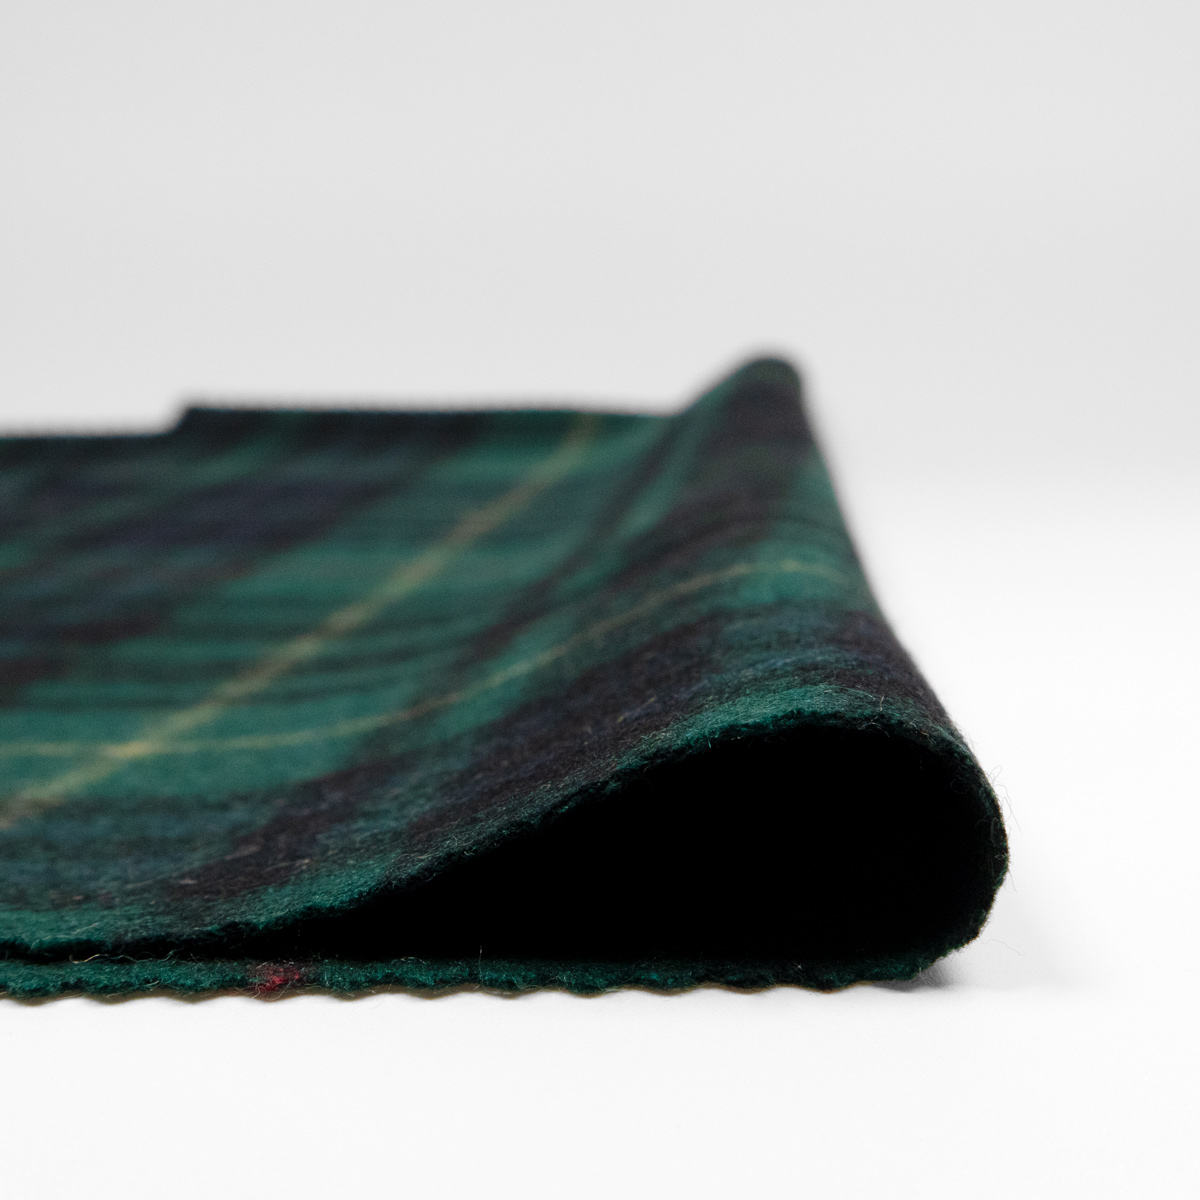 Tartan Wool (3 colors) - Fishman's Fabrics